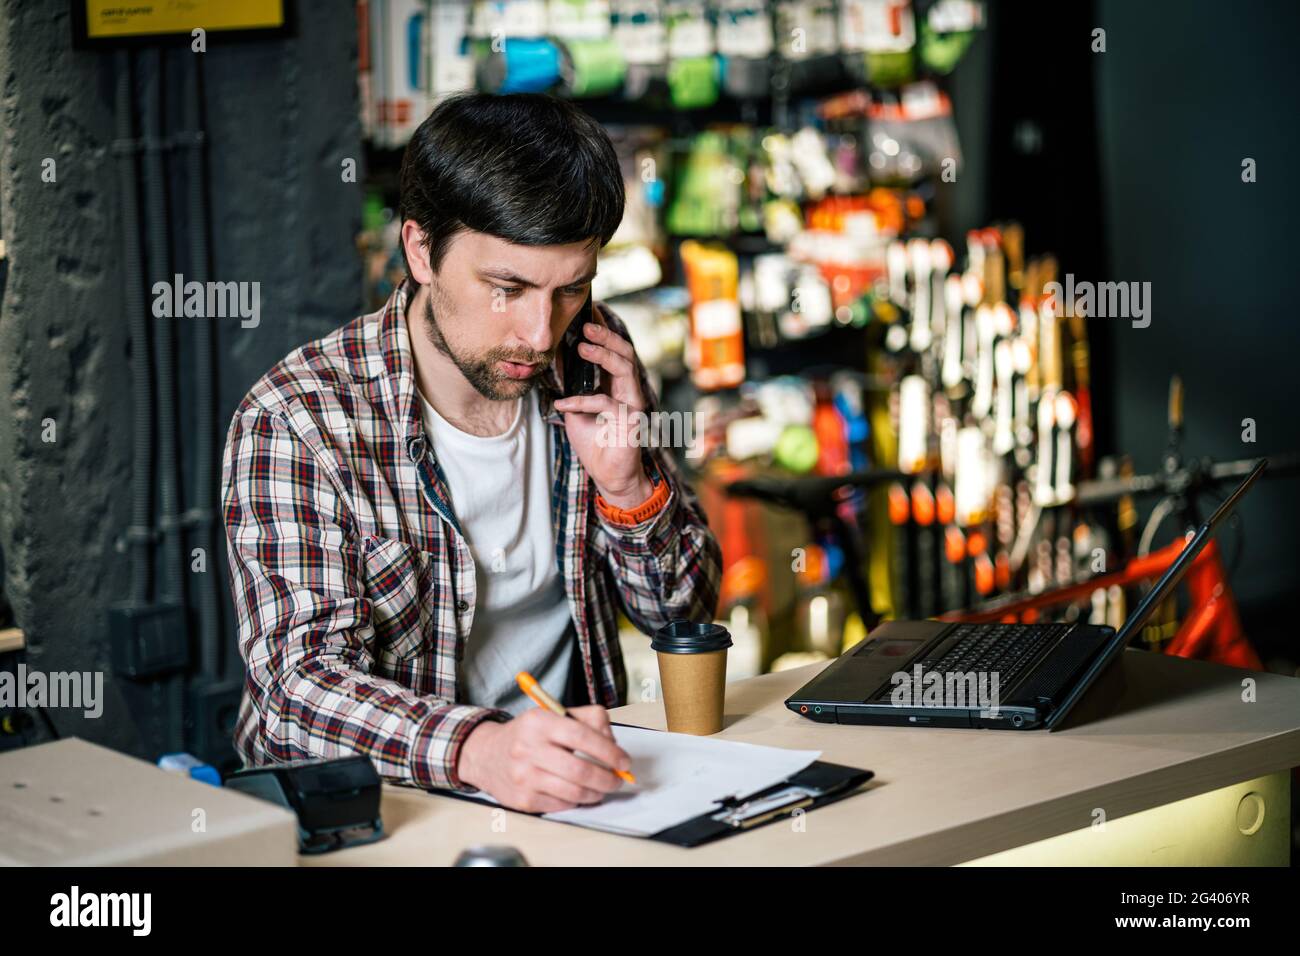 Proprietario del negozio di biciclette al lavoro. Il dipendente del negozio effettua un ordine tramite telefono cellulare al tavolo vicino al laptop nel negozio di articoli da viaggio e sportivi. Foto Stock